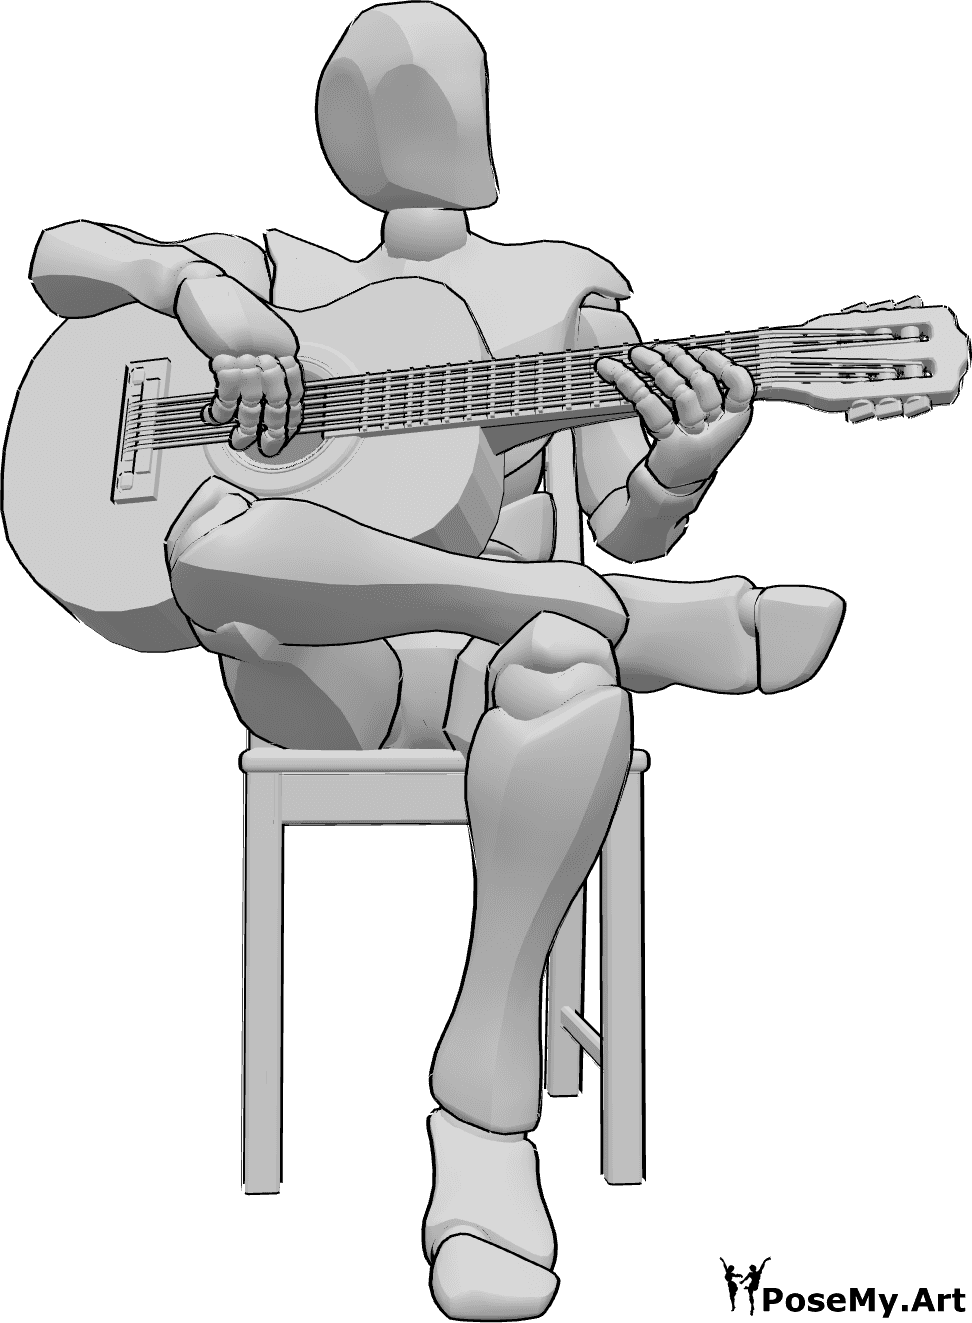 Riferimento alle pose- Uomo che suona la chitarra - Uomo seduto su una sedia con le gambe incrociate che suona la chitarra, guardando a sinistra